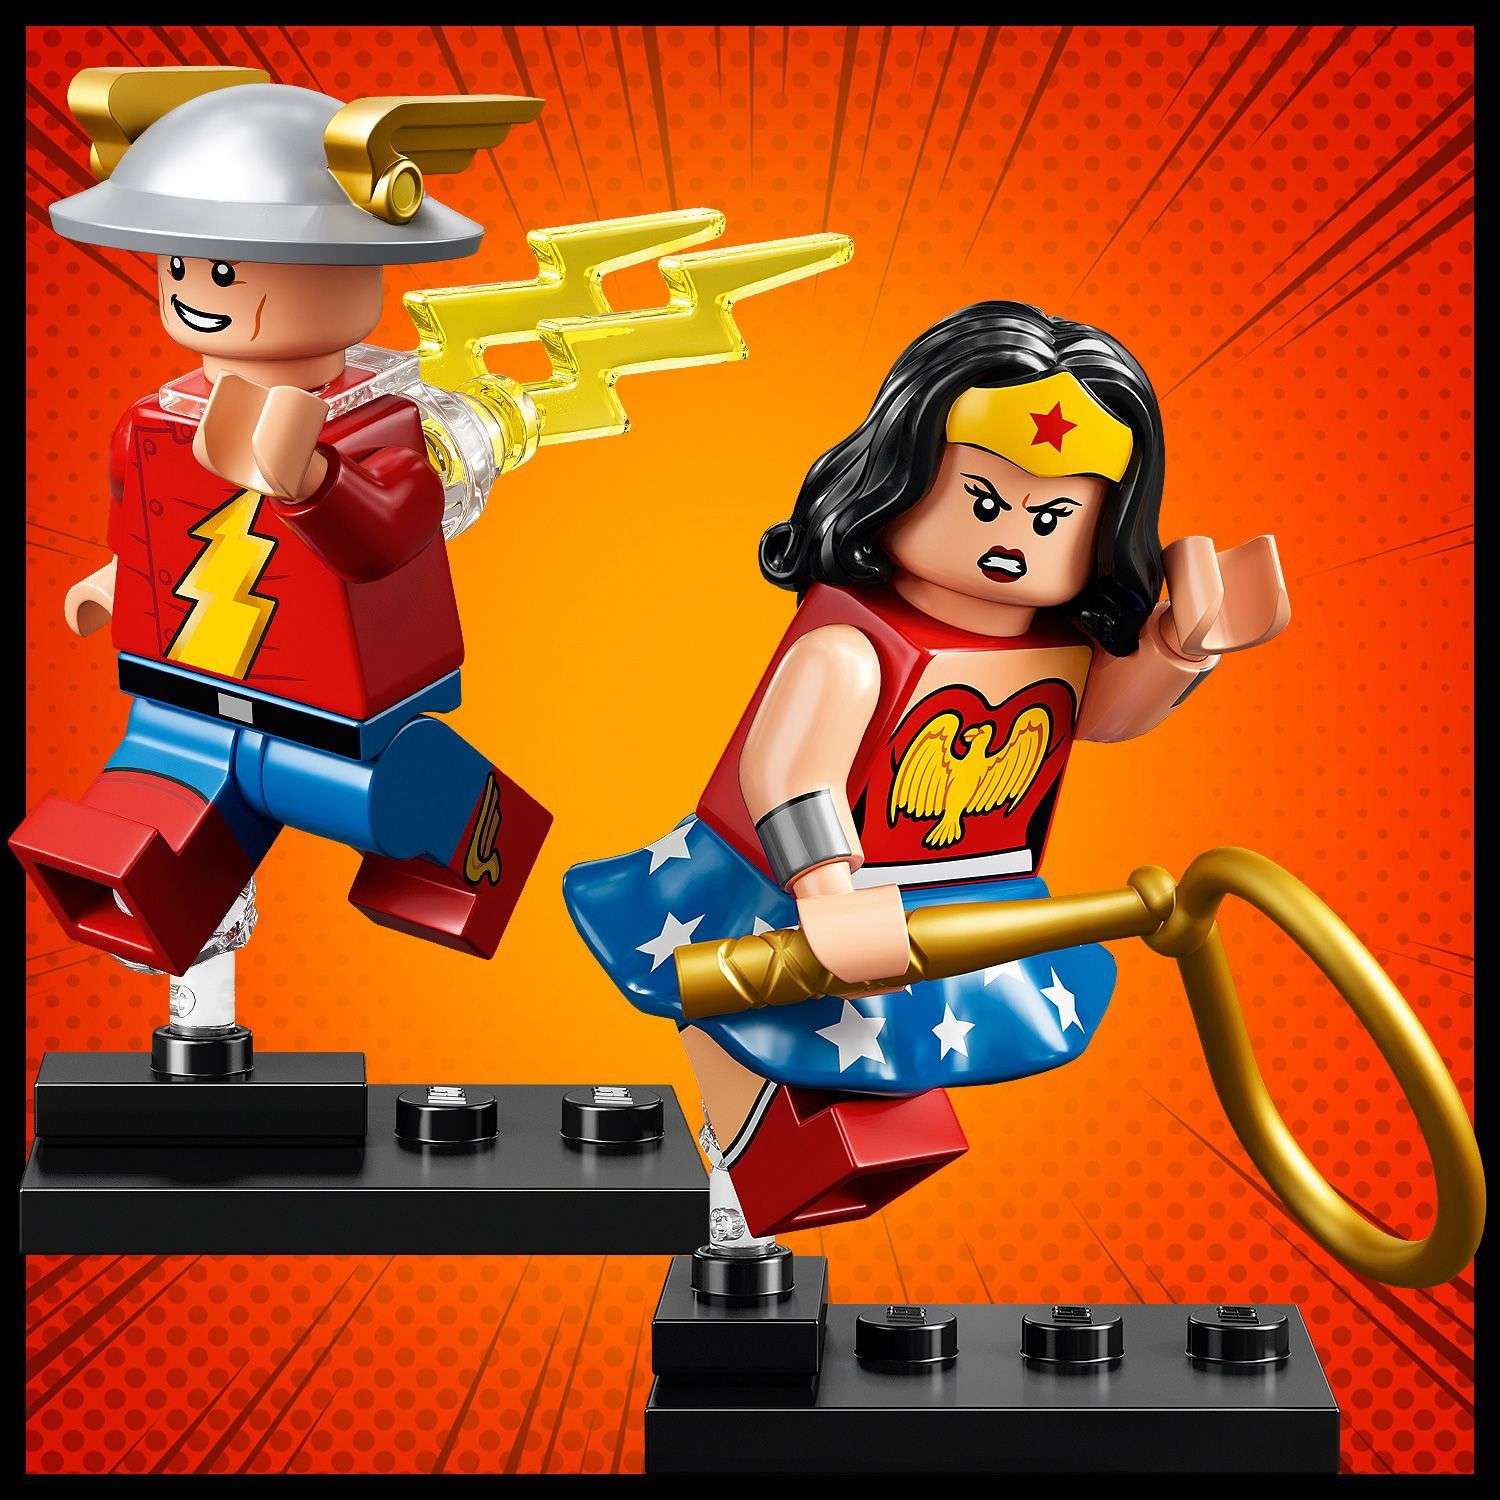 Конструктор LEGO Minifigures DC Super Heroes Series 71026 - фото 11